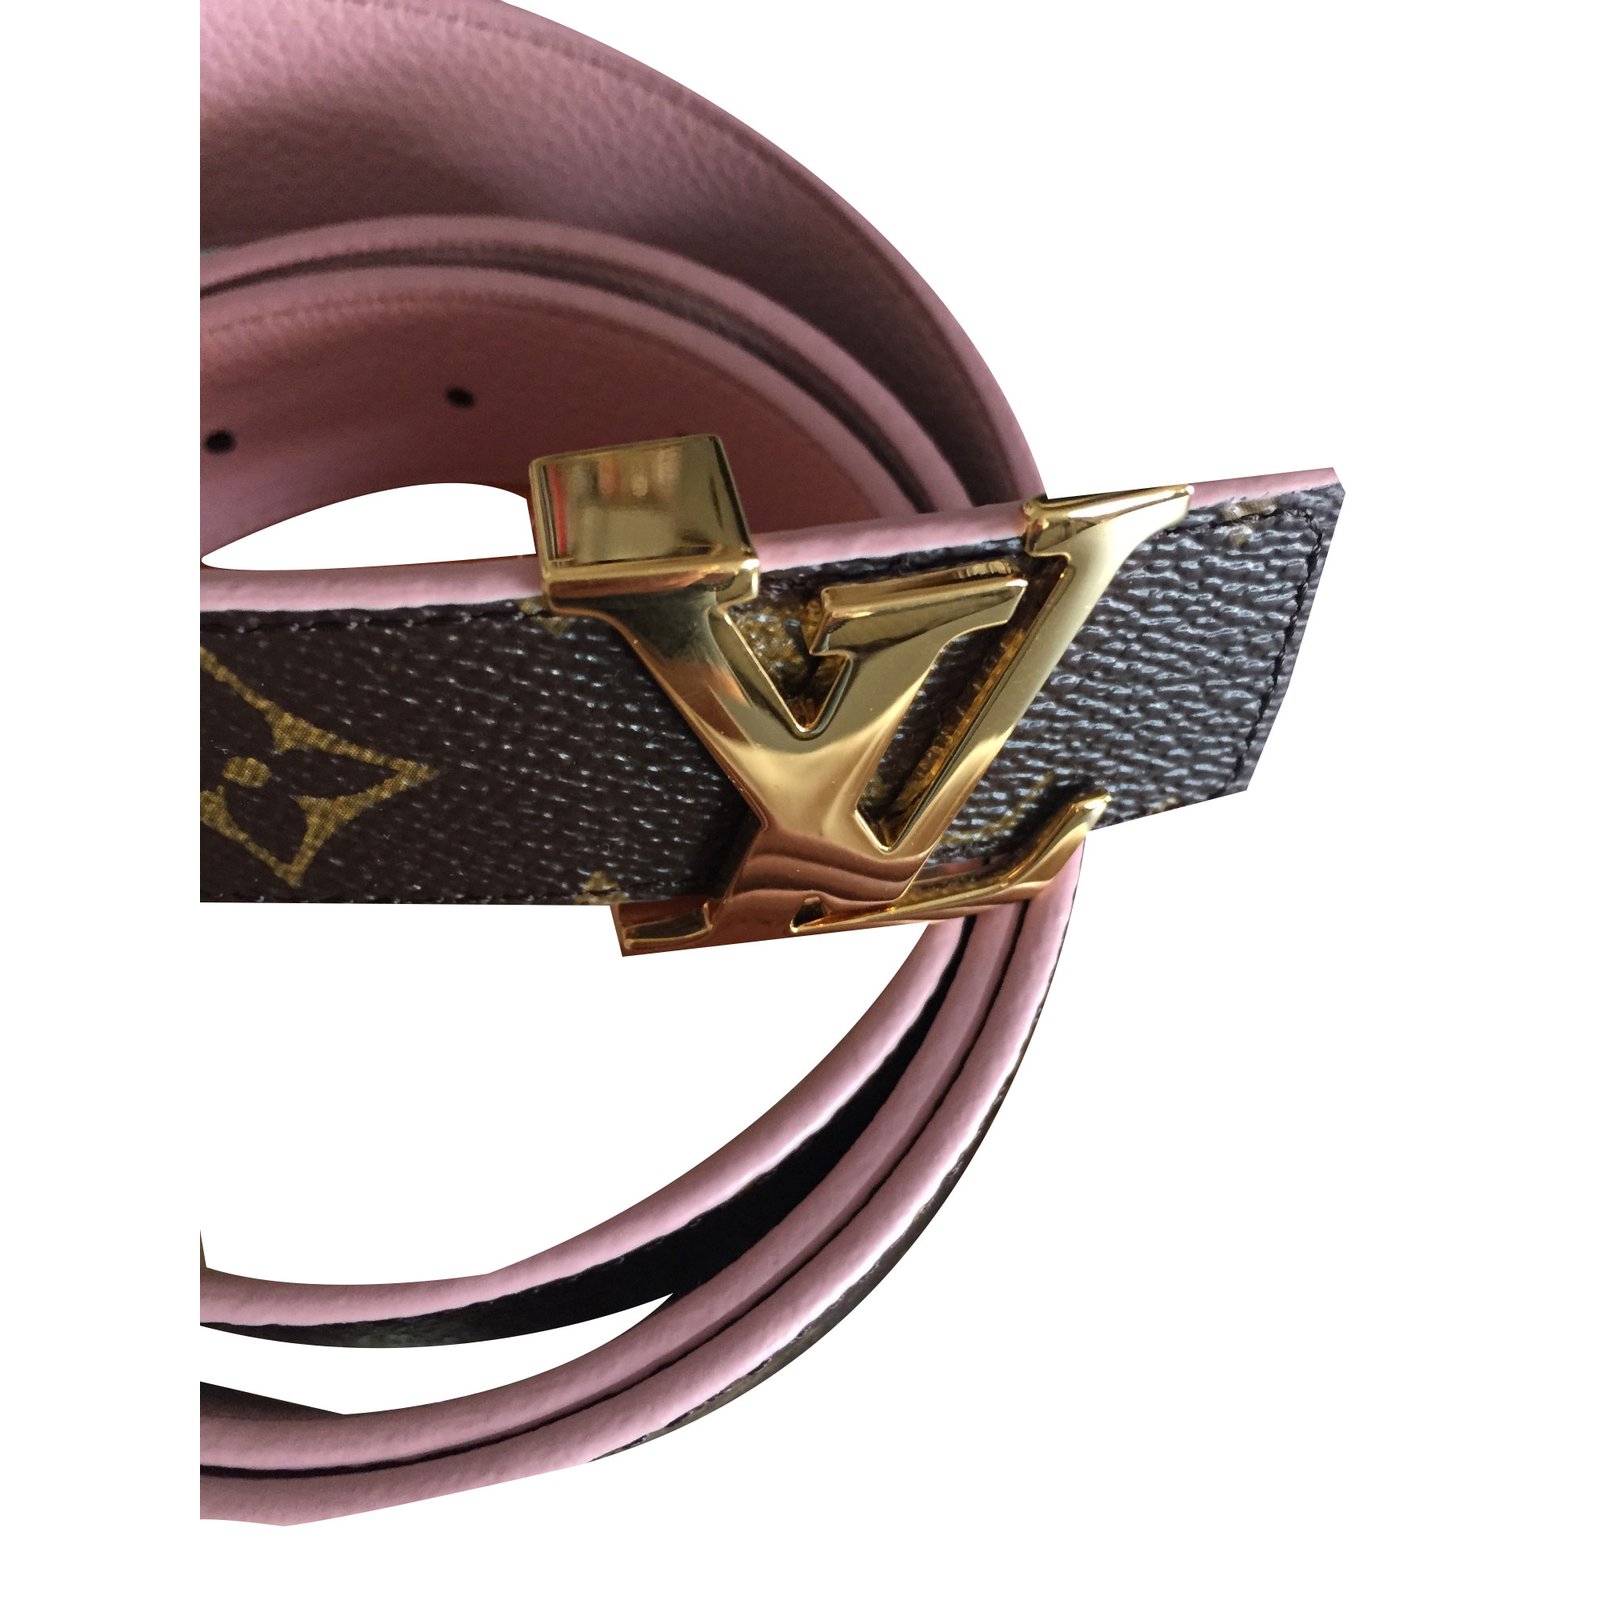 Bum bag / sac ceinture shearling clutch bag Louis Vuitton Ecru in Shearling  - 9144608